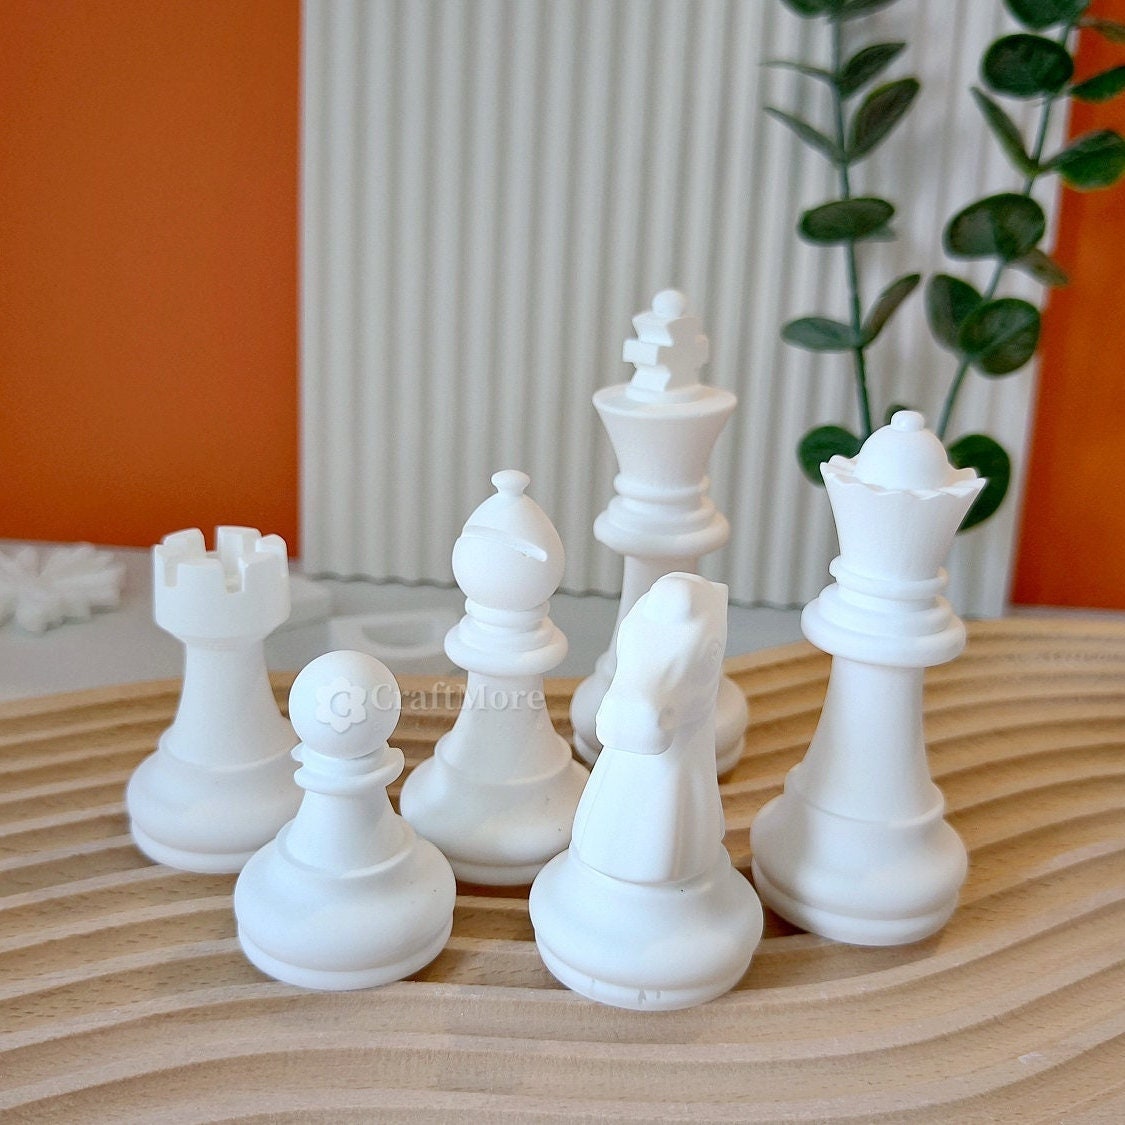 Schach-Harzform, flexible Schachformen, DIY-Spaß, einfaches Entformen,  stark, 7 Stück zum Basteln von Schach